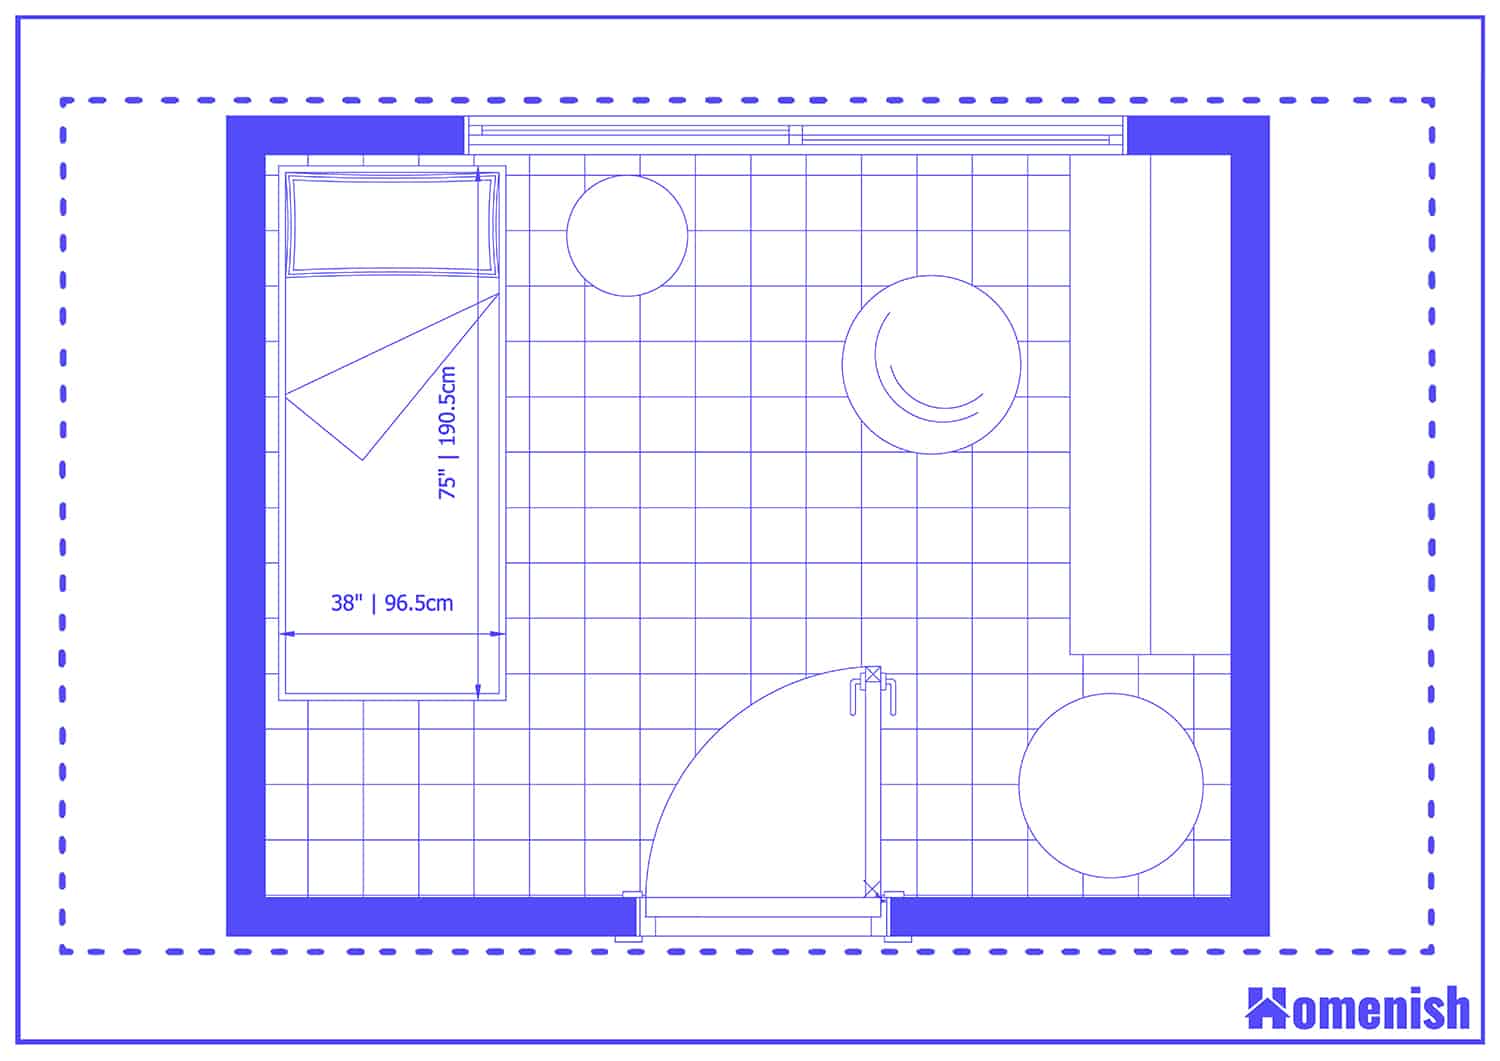 Children's Bedroom Layout Floor Plan